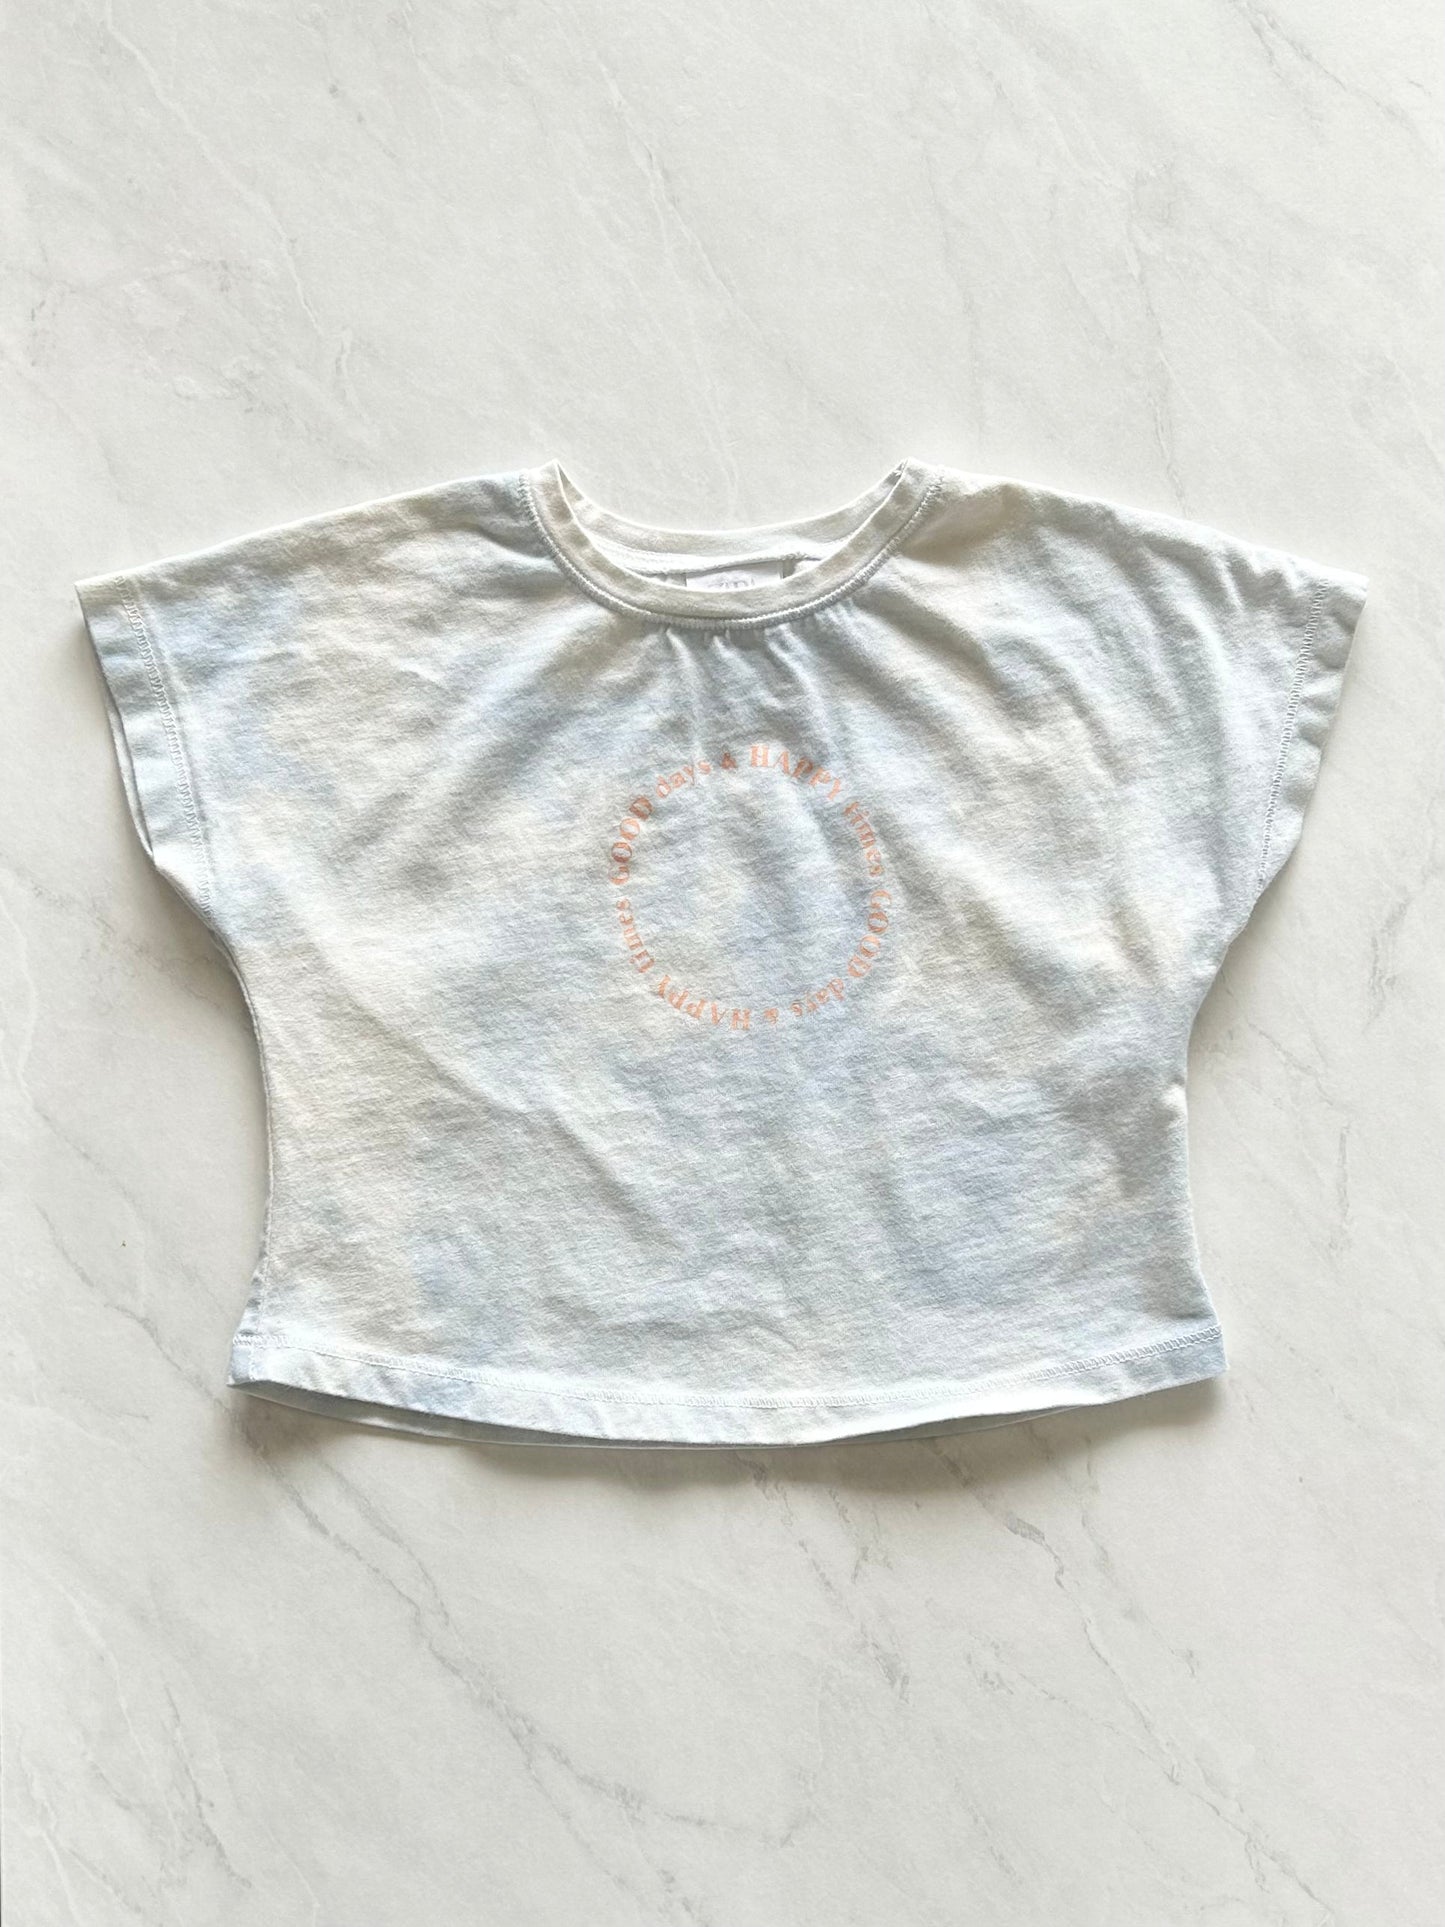 T-shirt - Zara - 9-12 mois